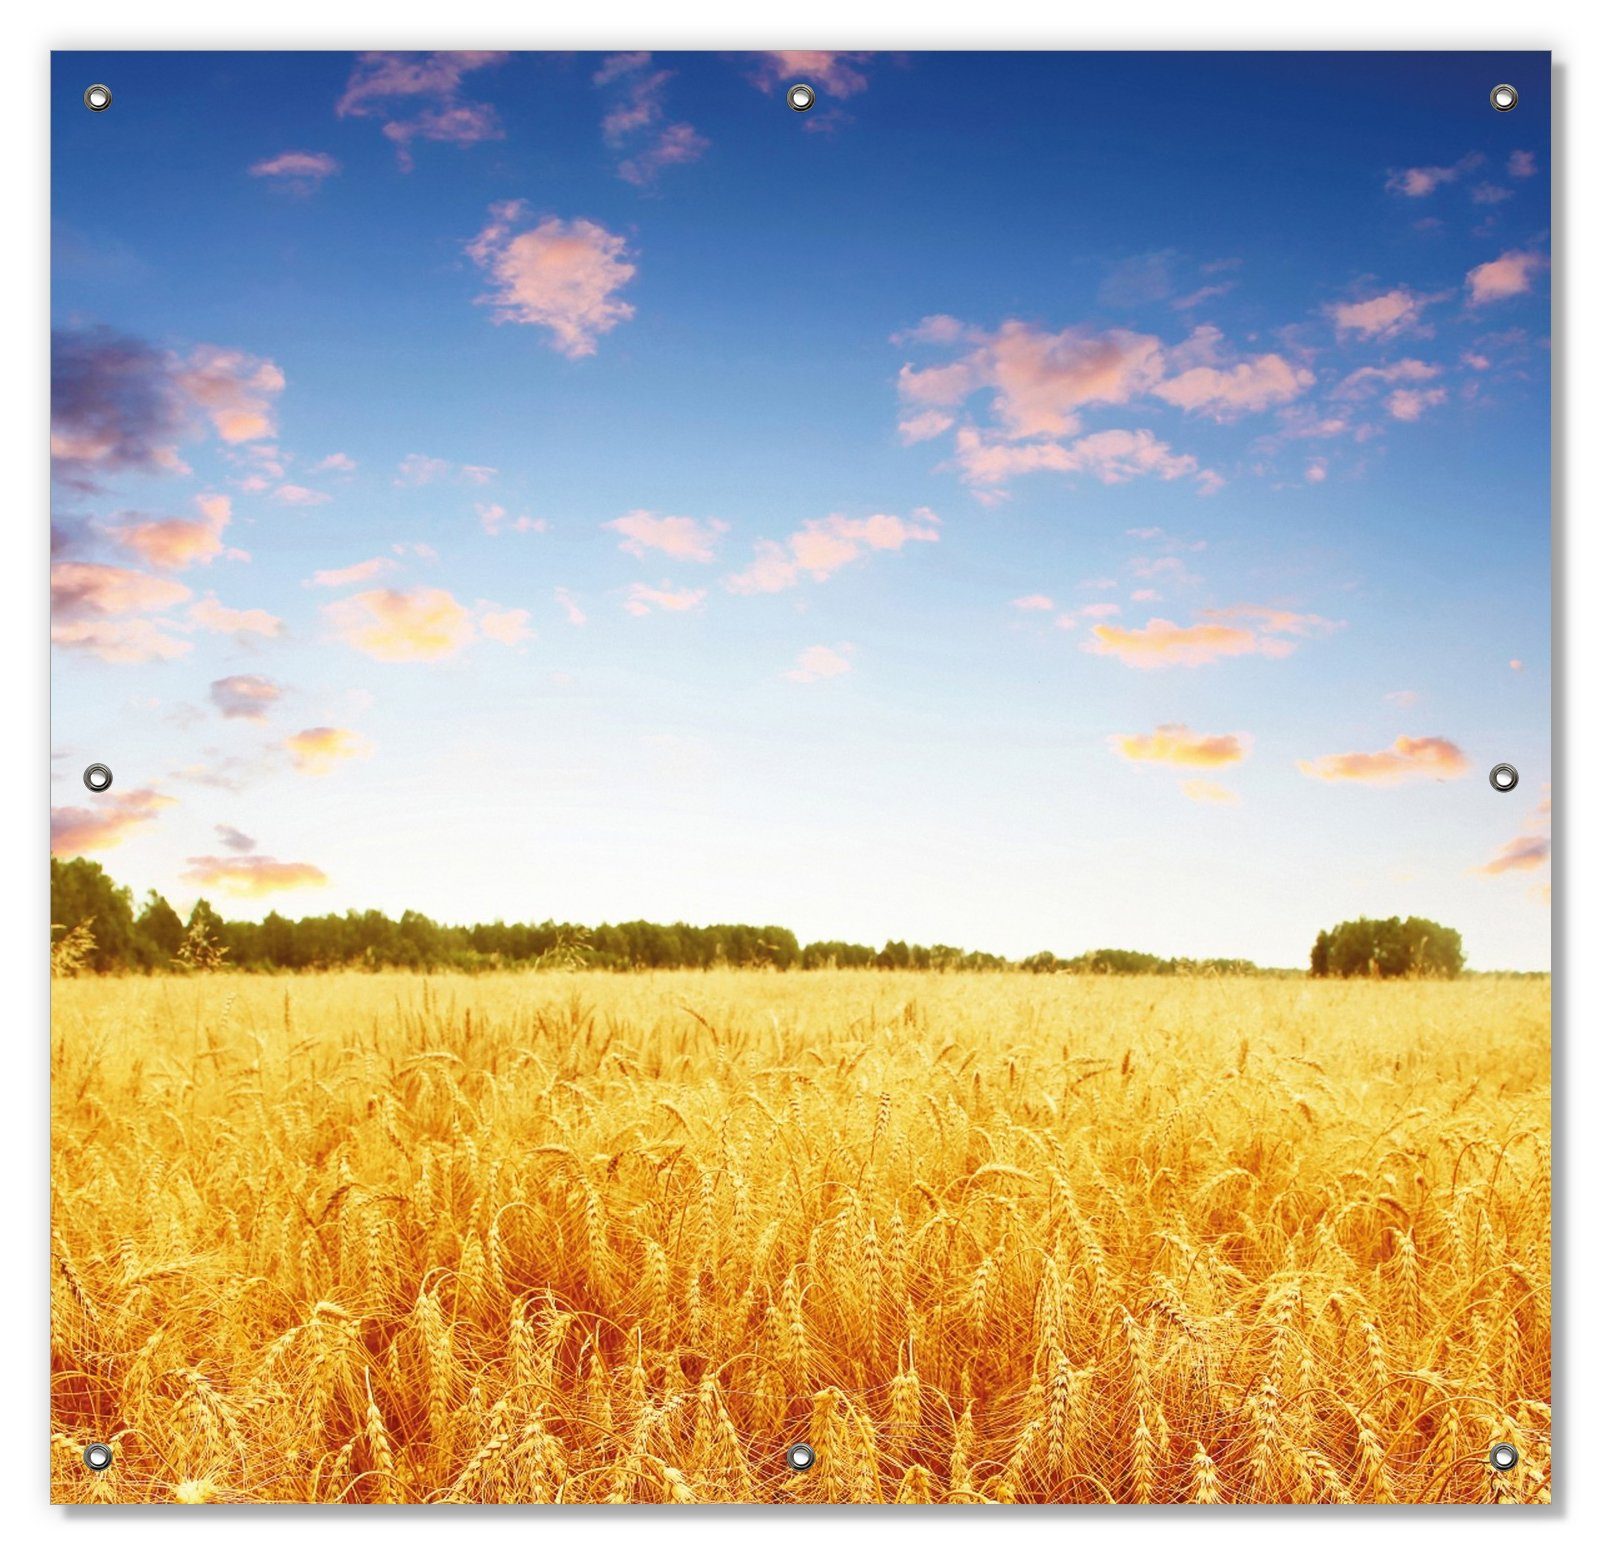 und blauem wiederablösbar wiederverwendbar Weizenfeld unter Himmel, mit Sonnenschutz Wallario, Saugnäpfen, blickdicht,